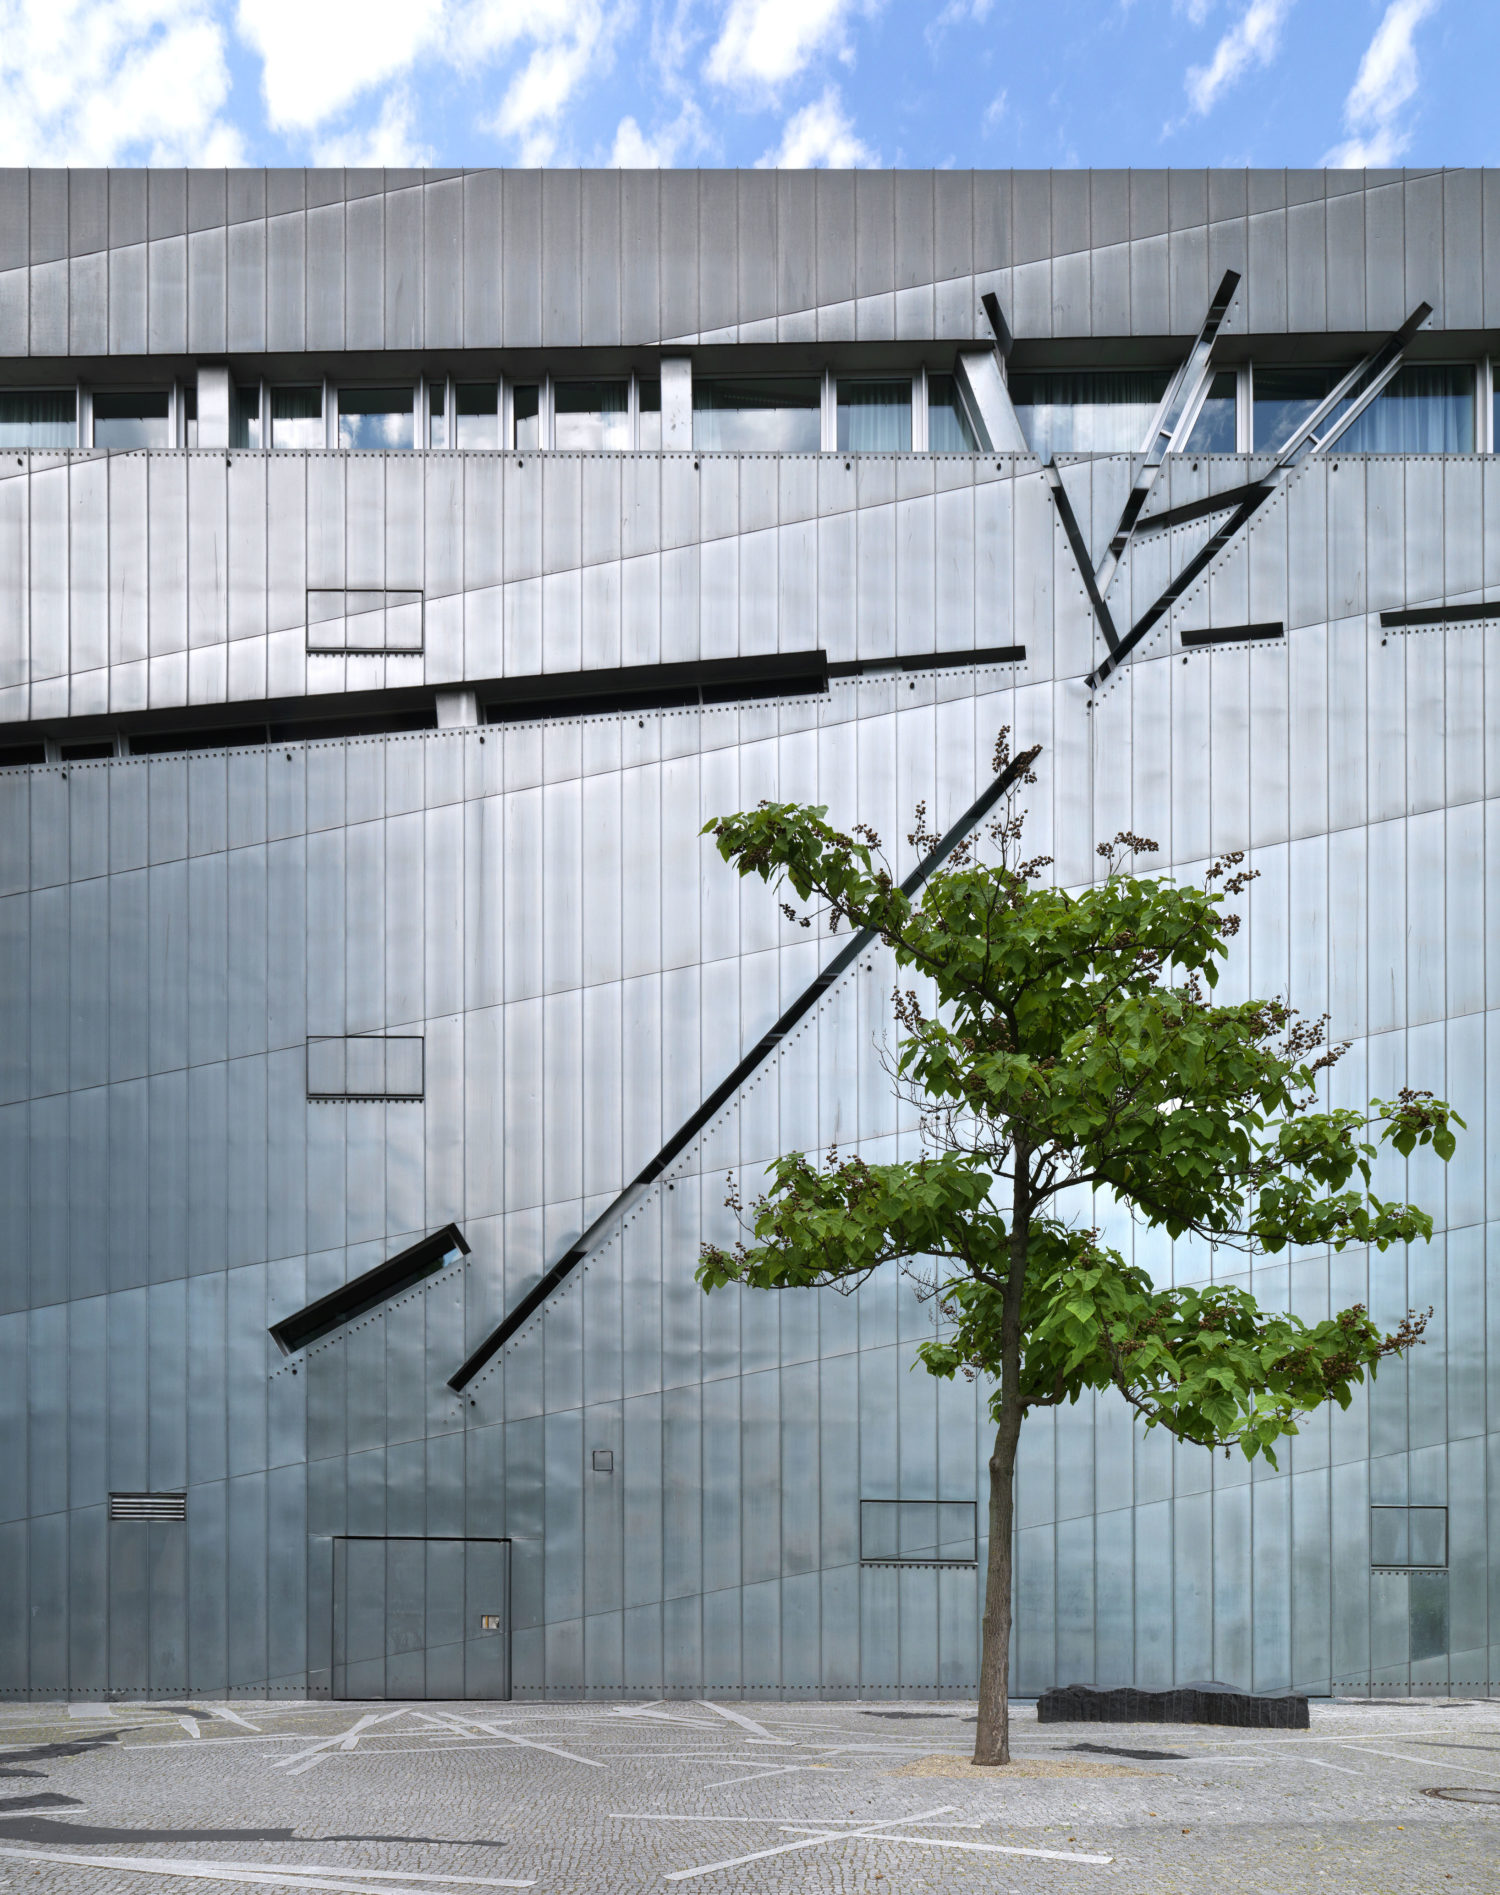 Die neue Dauerausstellung des Jüdischen Museums Berlin befindet sich im Libeskind-Bau, der 2001 eröffnet wurde. Foto: Jens Ziehe